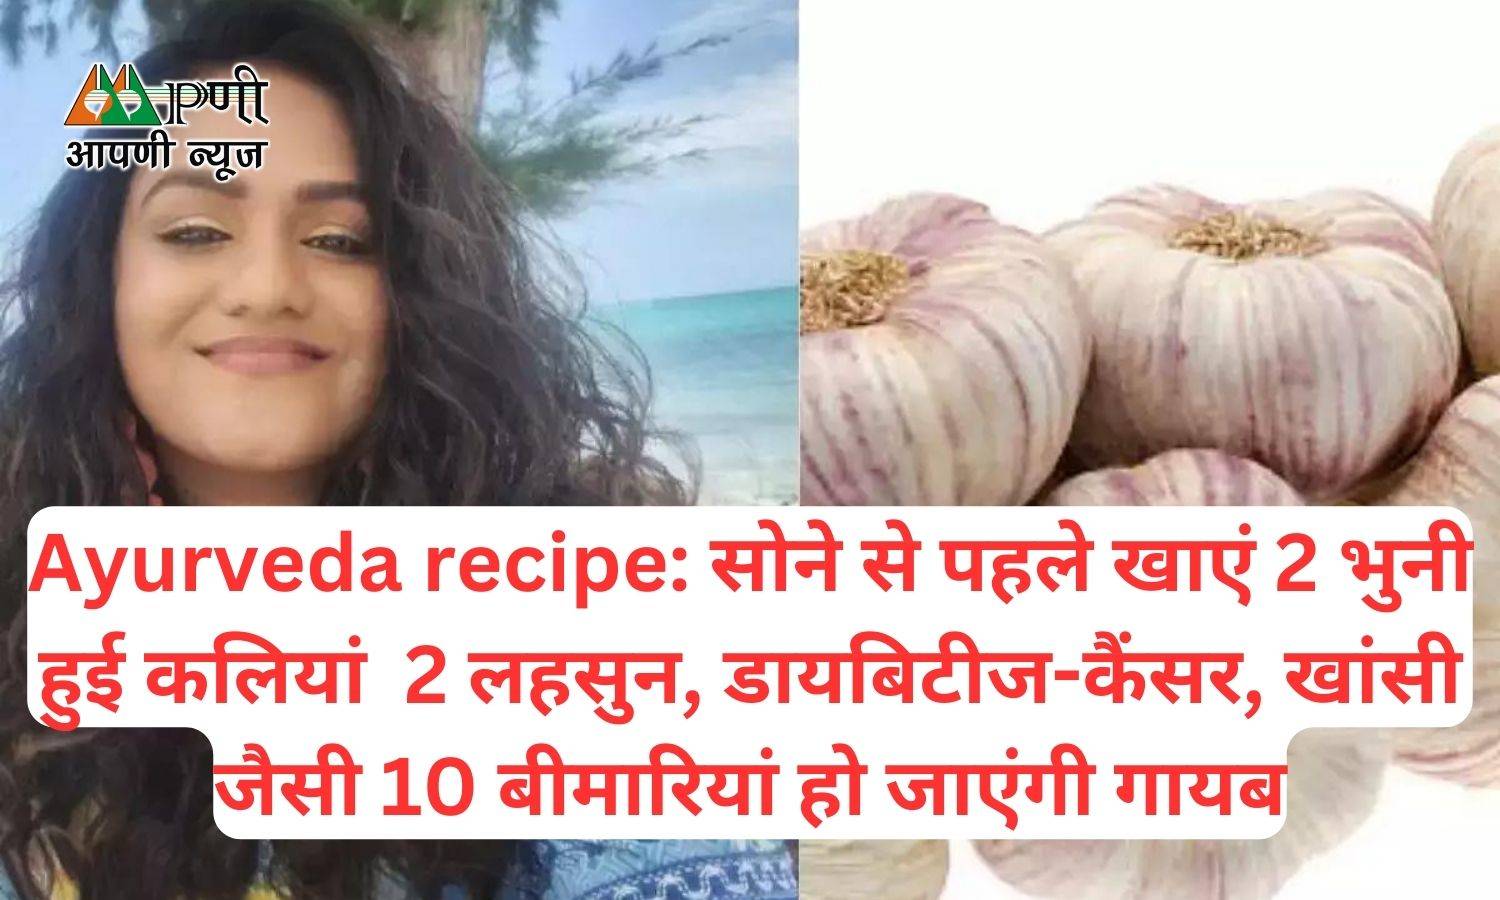 Ayurveda recipe: सोने से पहले खाएं 2 भुनी हुई कलियां 2 लहसुन, डायबिटीज-कैंसर, खांसी जैसी 10 बीमारियां हो जाएंगी गायब